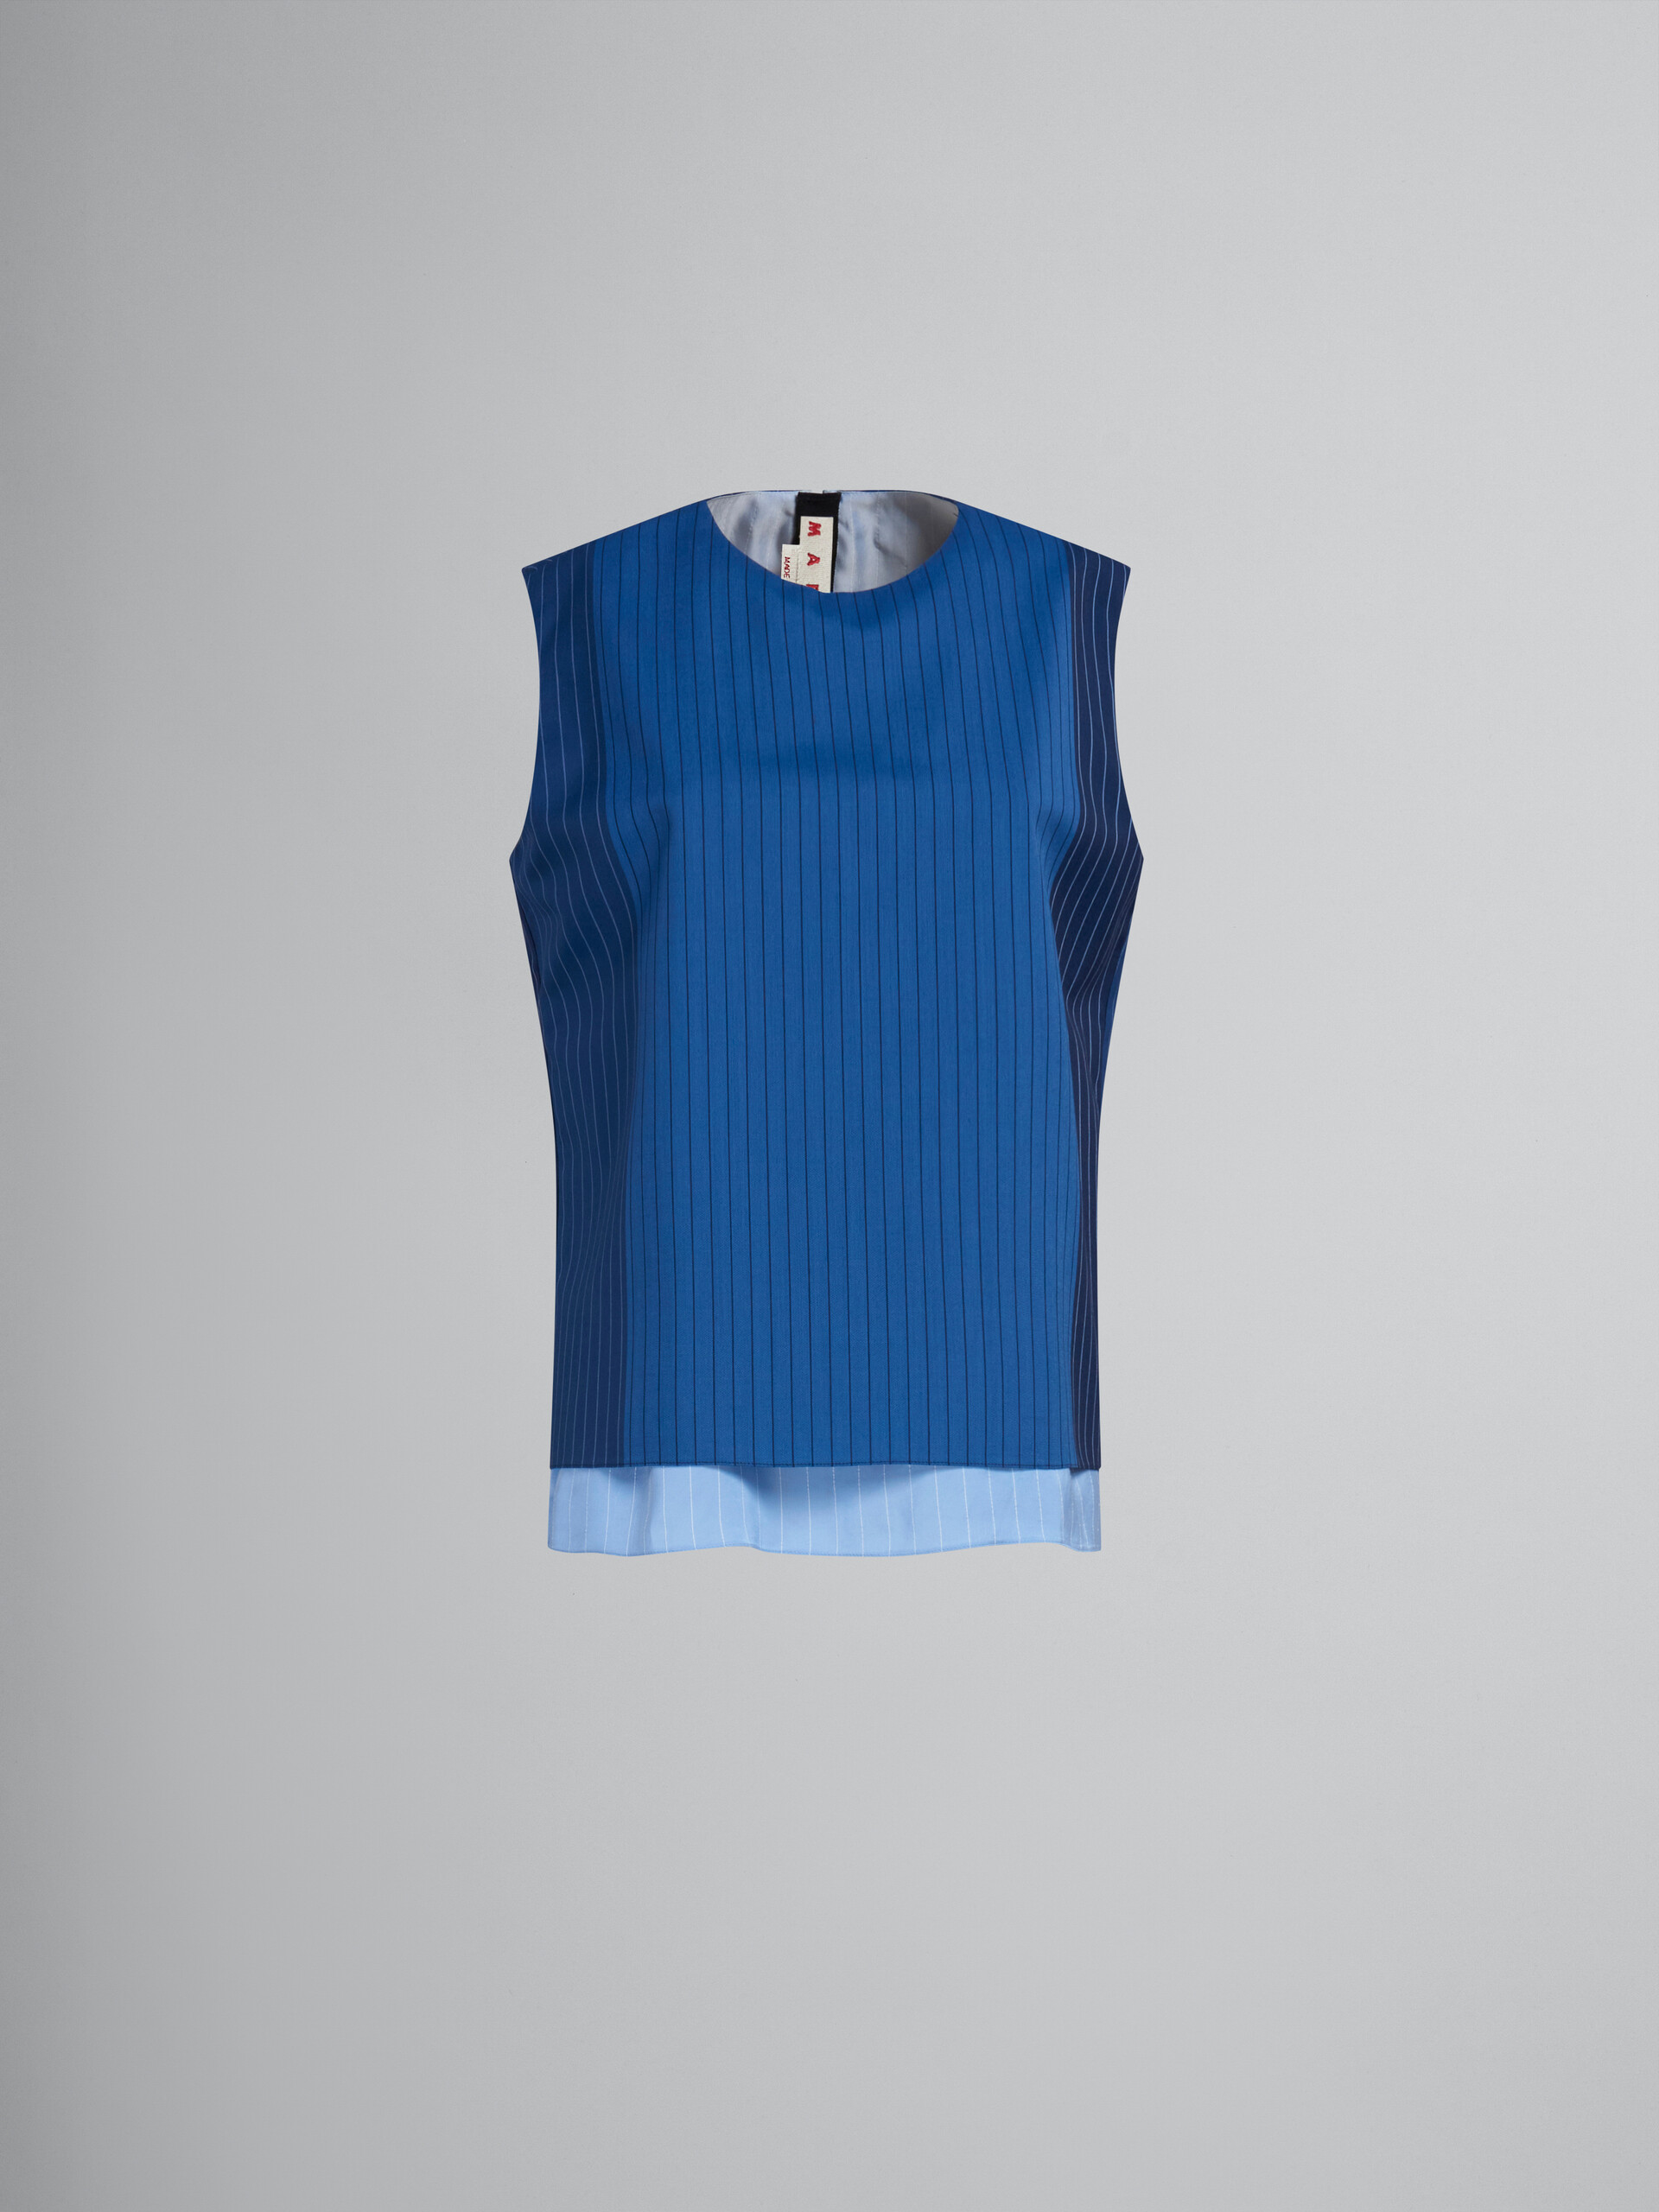 Top smanicato in lana gessata blu dégradé - Camicie - Image 1